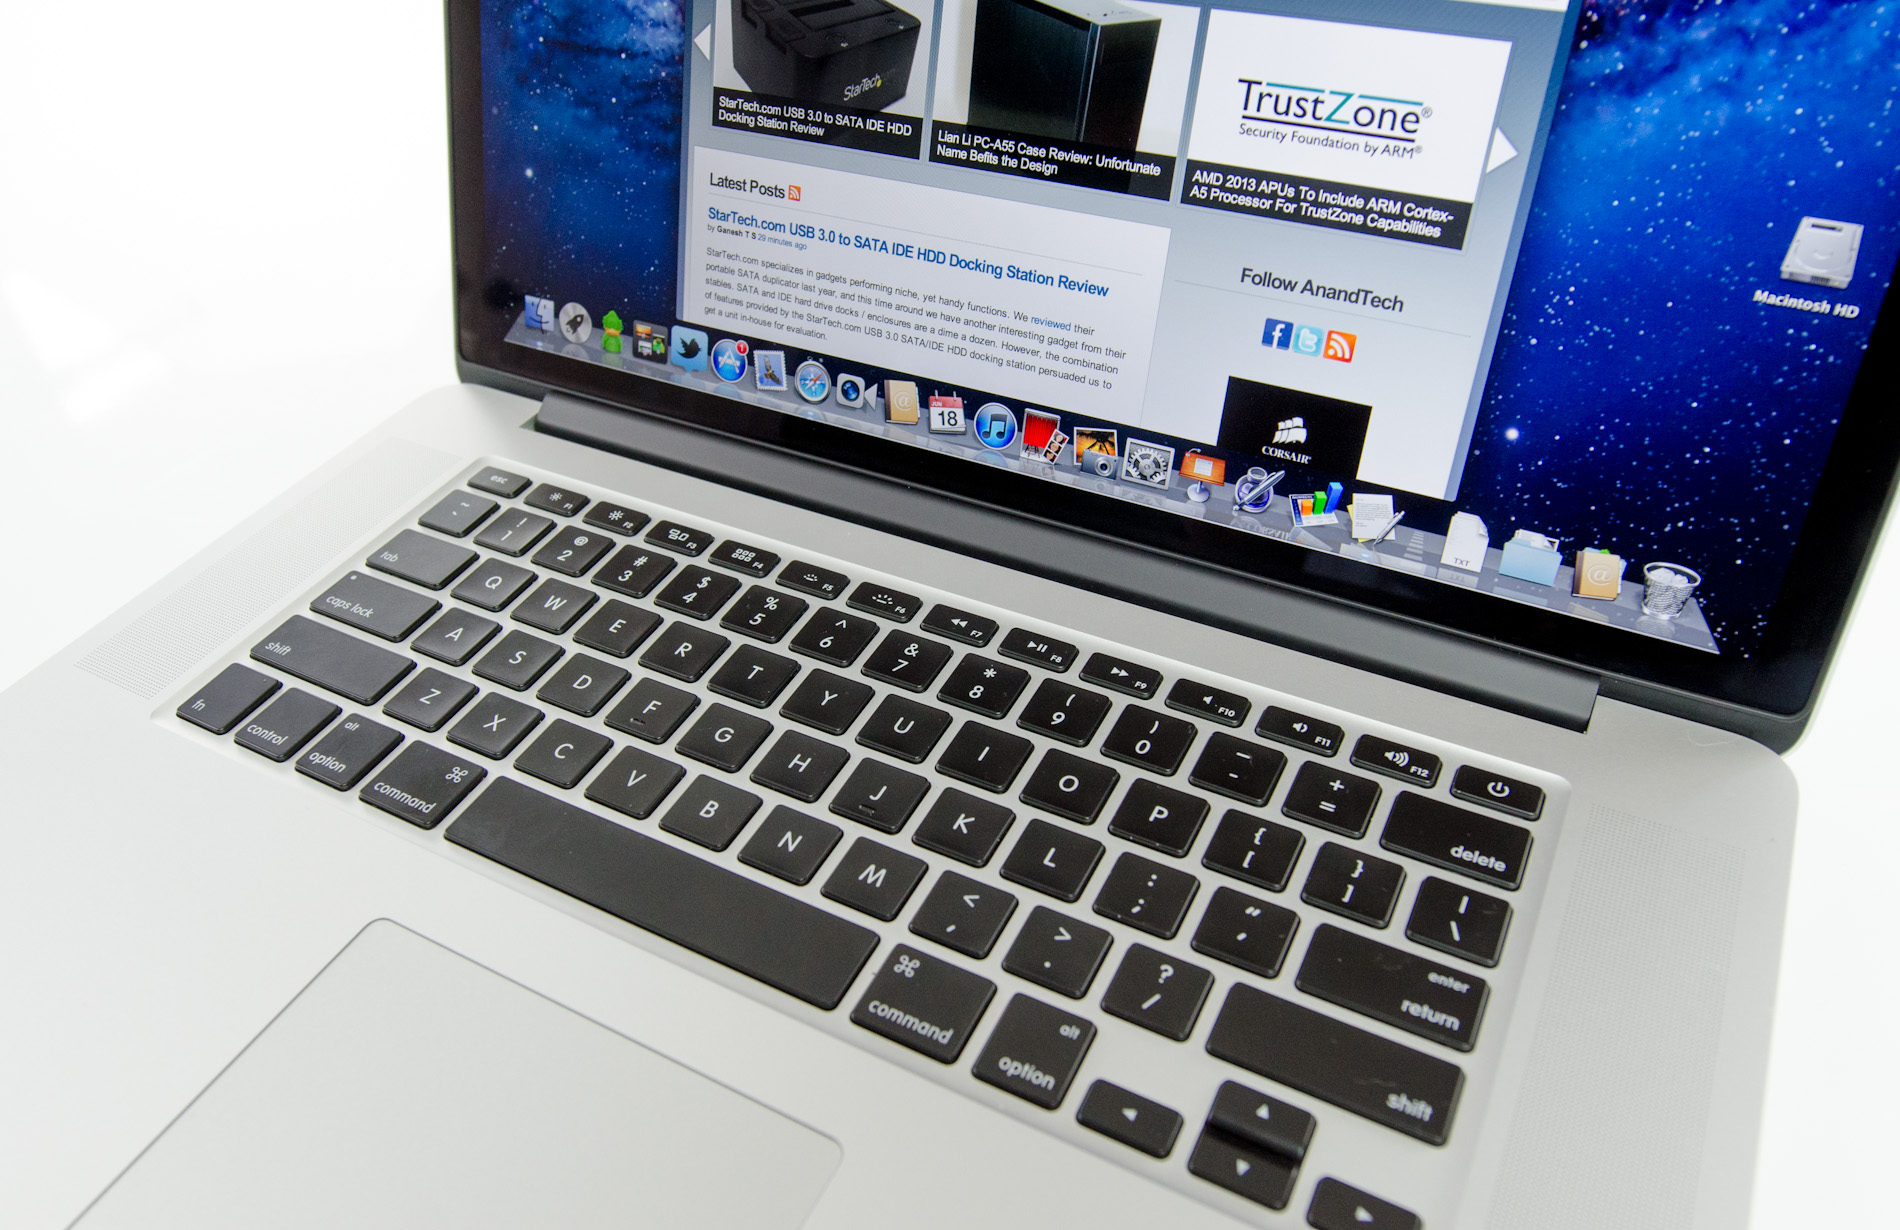 The Next Gen Macbook Pro With Retina Display Review